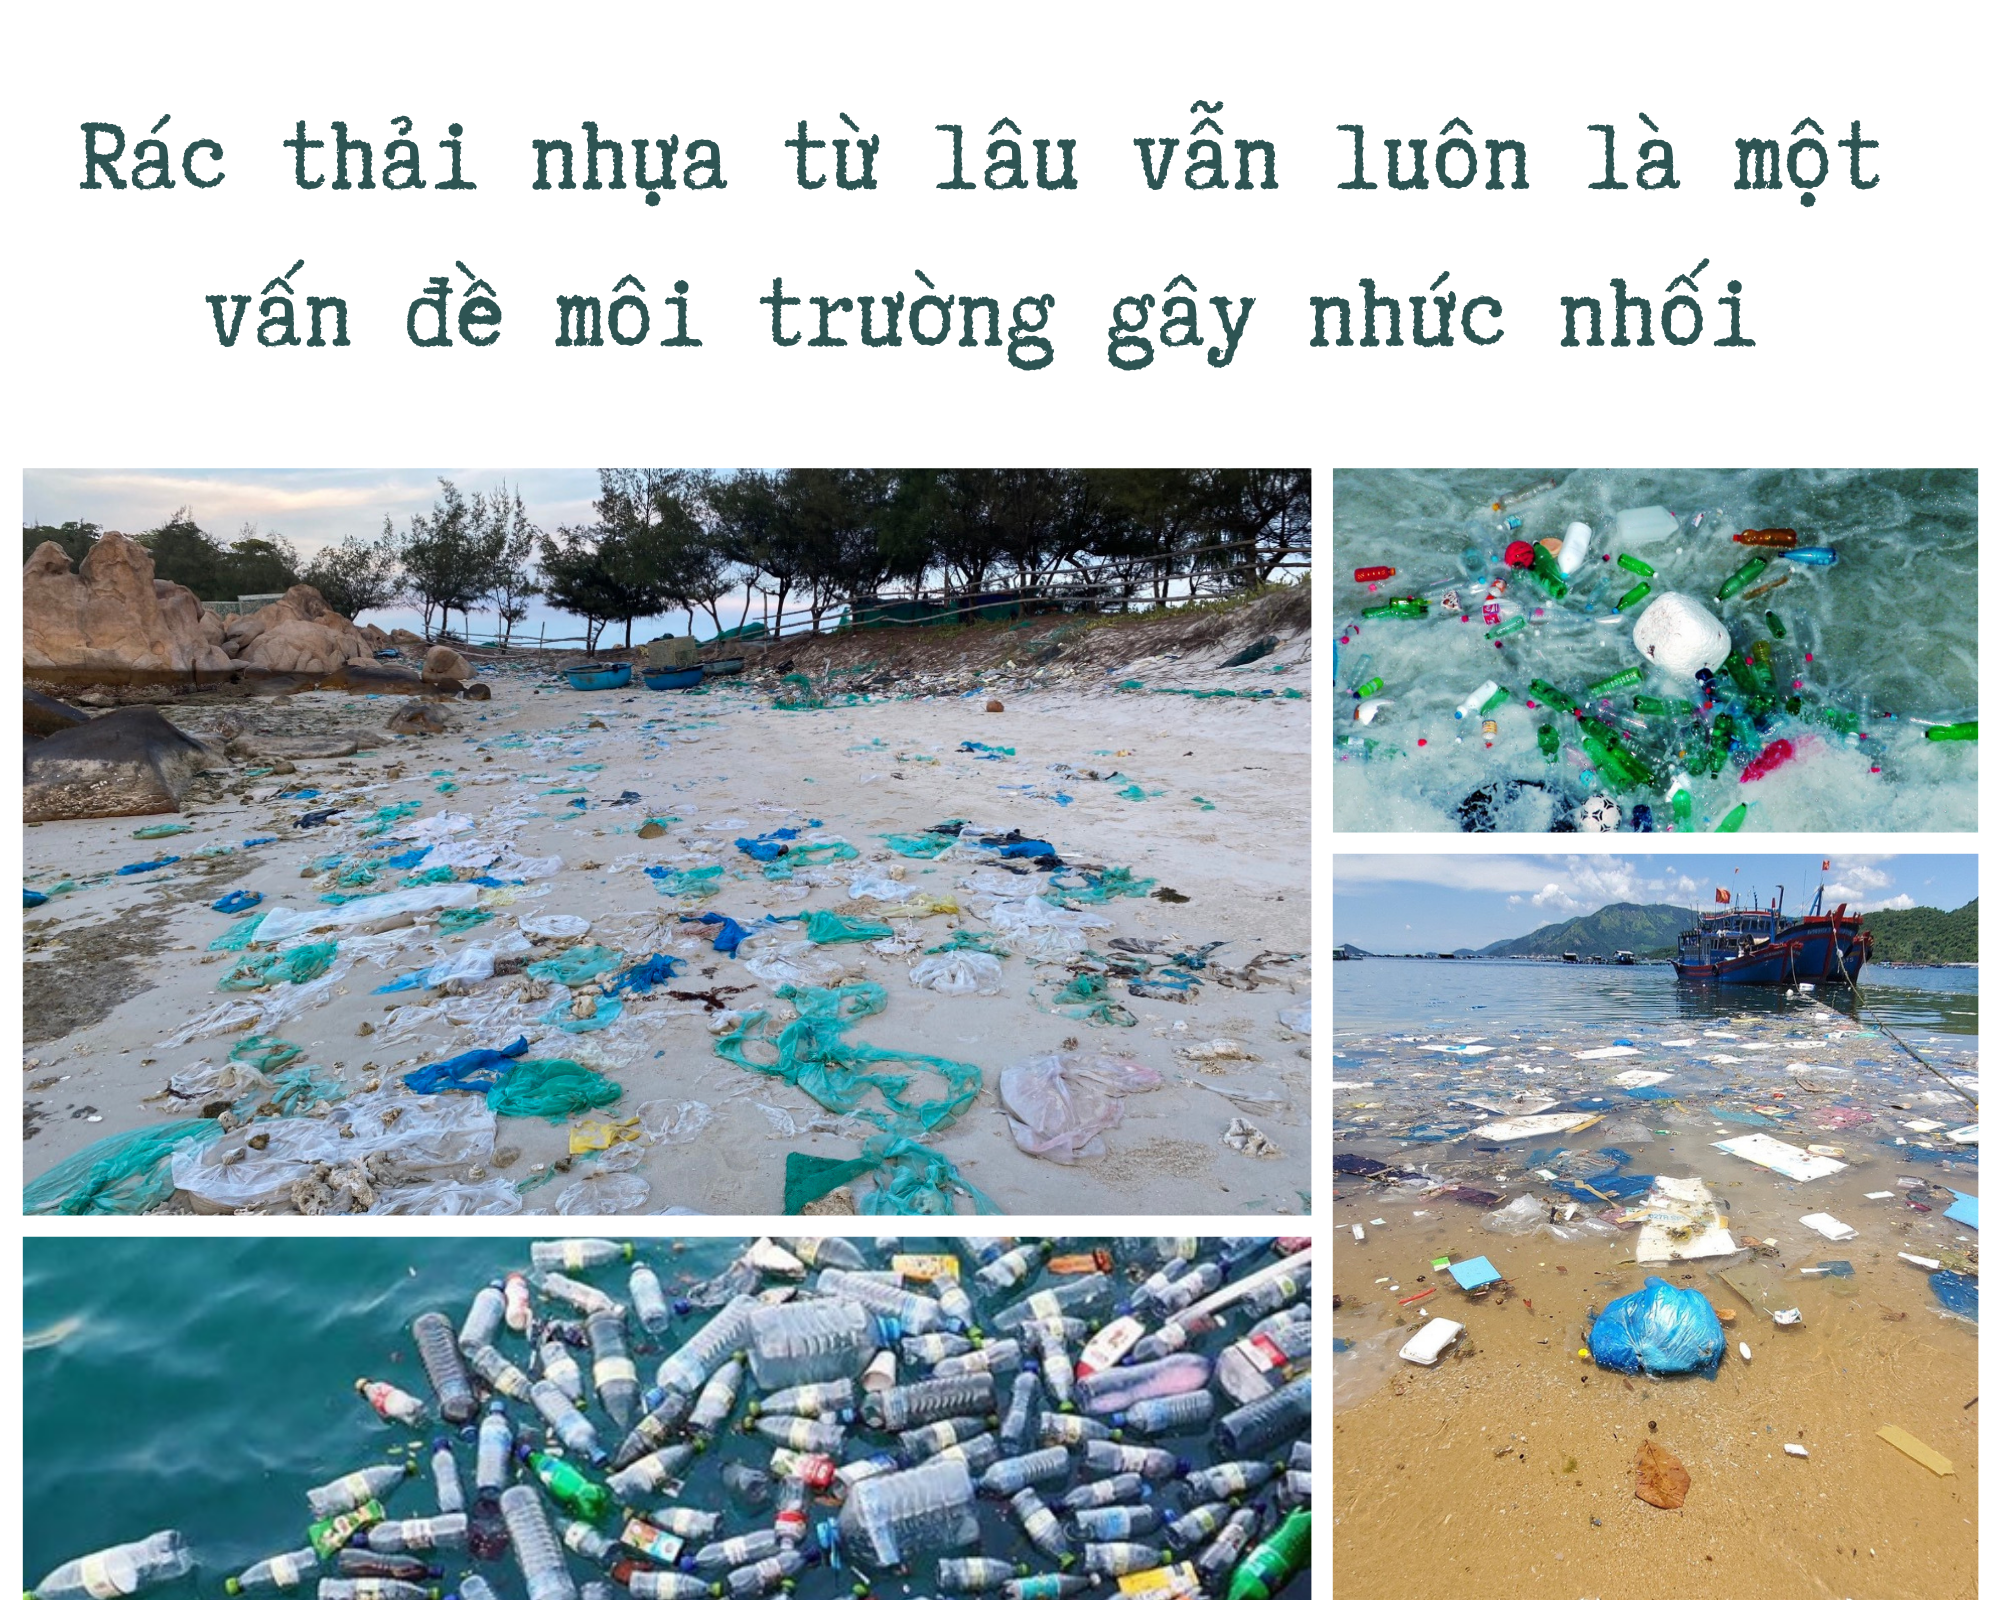 Xanh hóa đại dương, đẩy lùi “rác trắng” bằng hành động